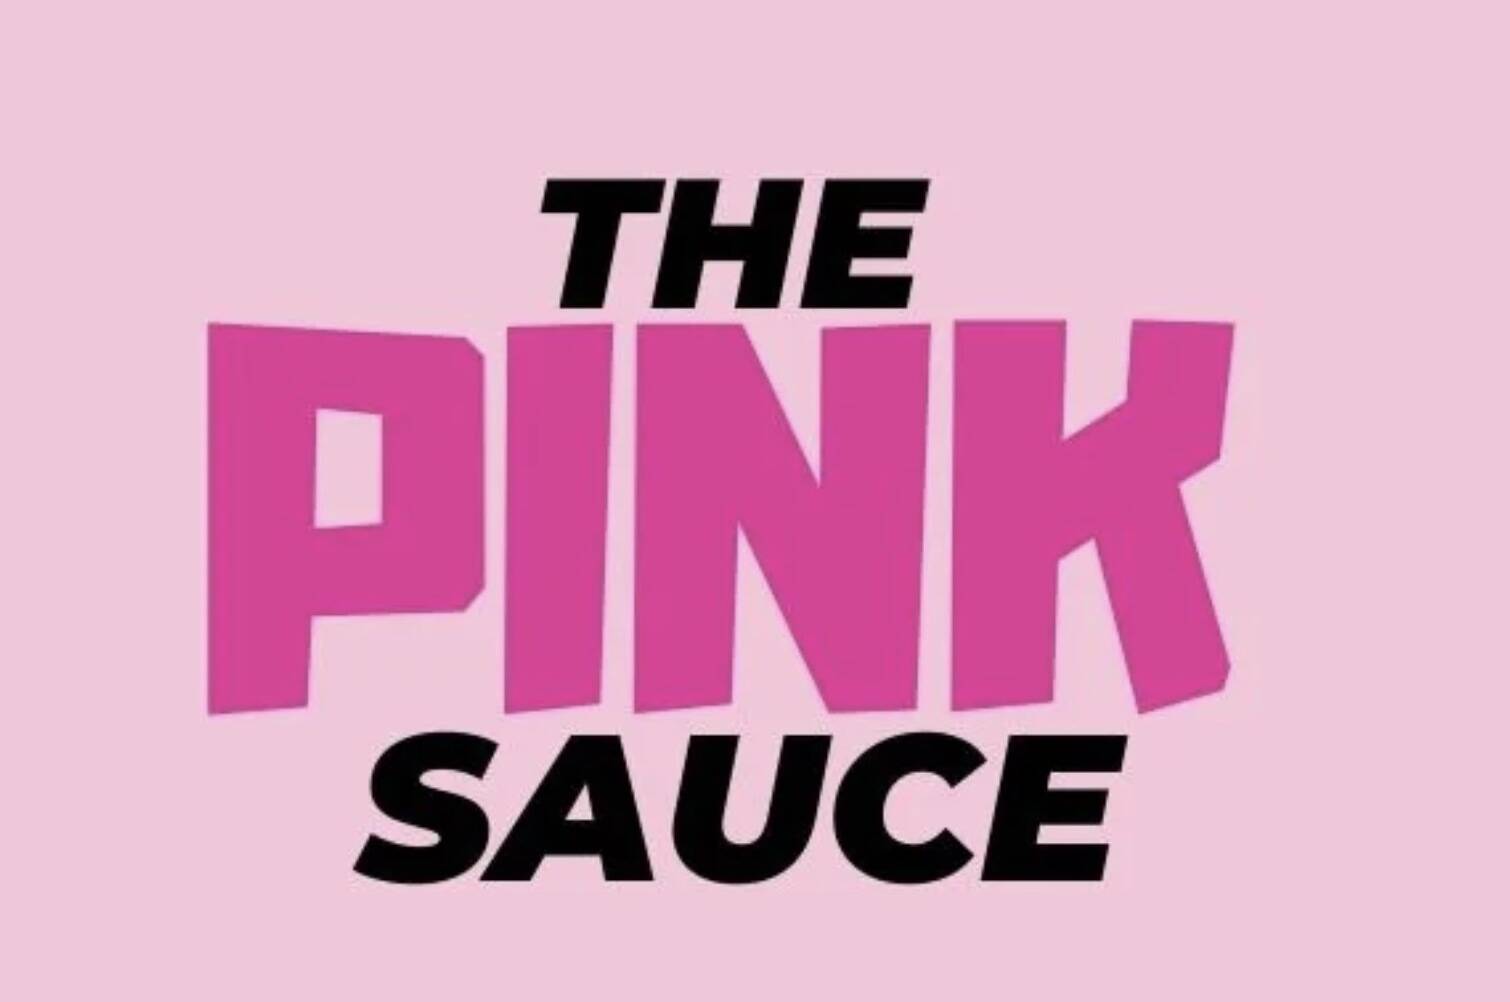 The Pink Sauce. (thepinksauce.com)